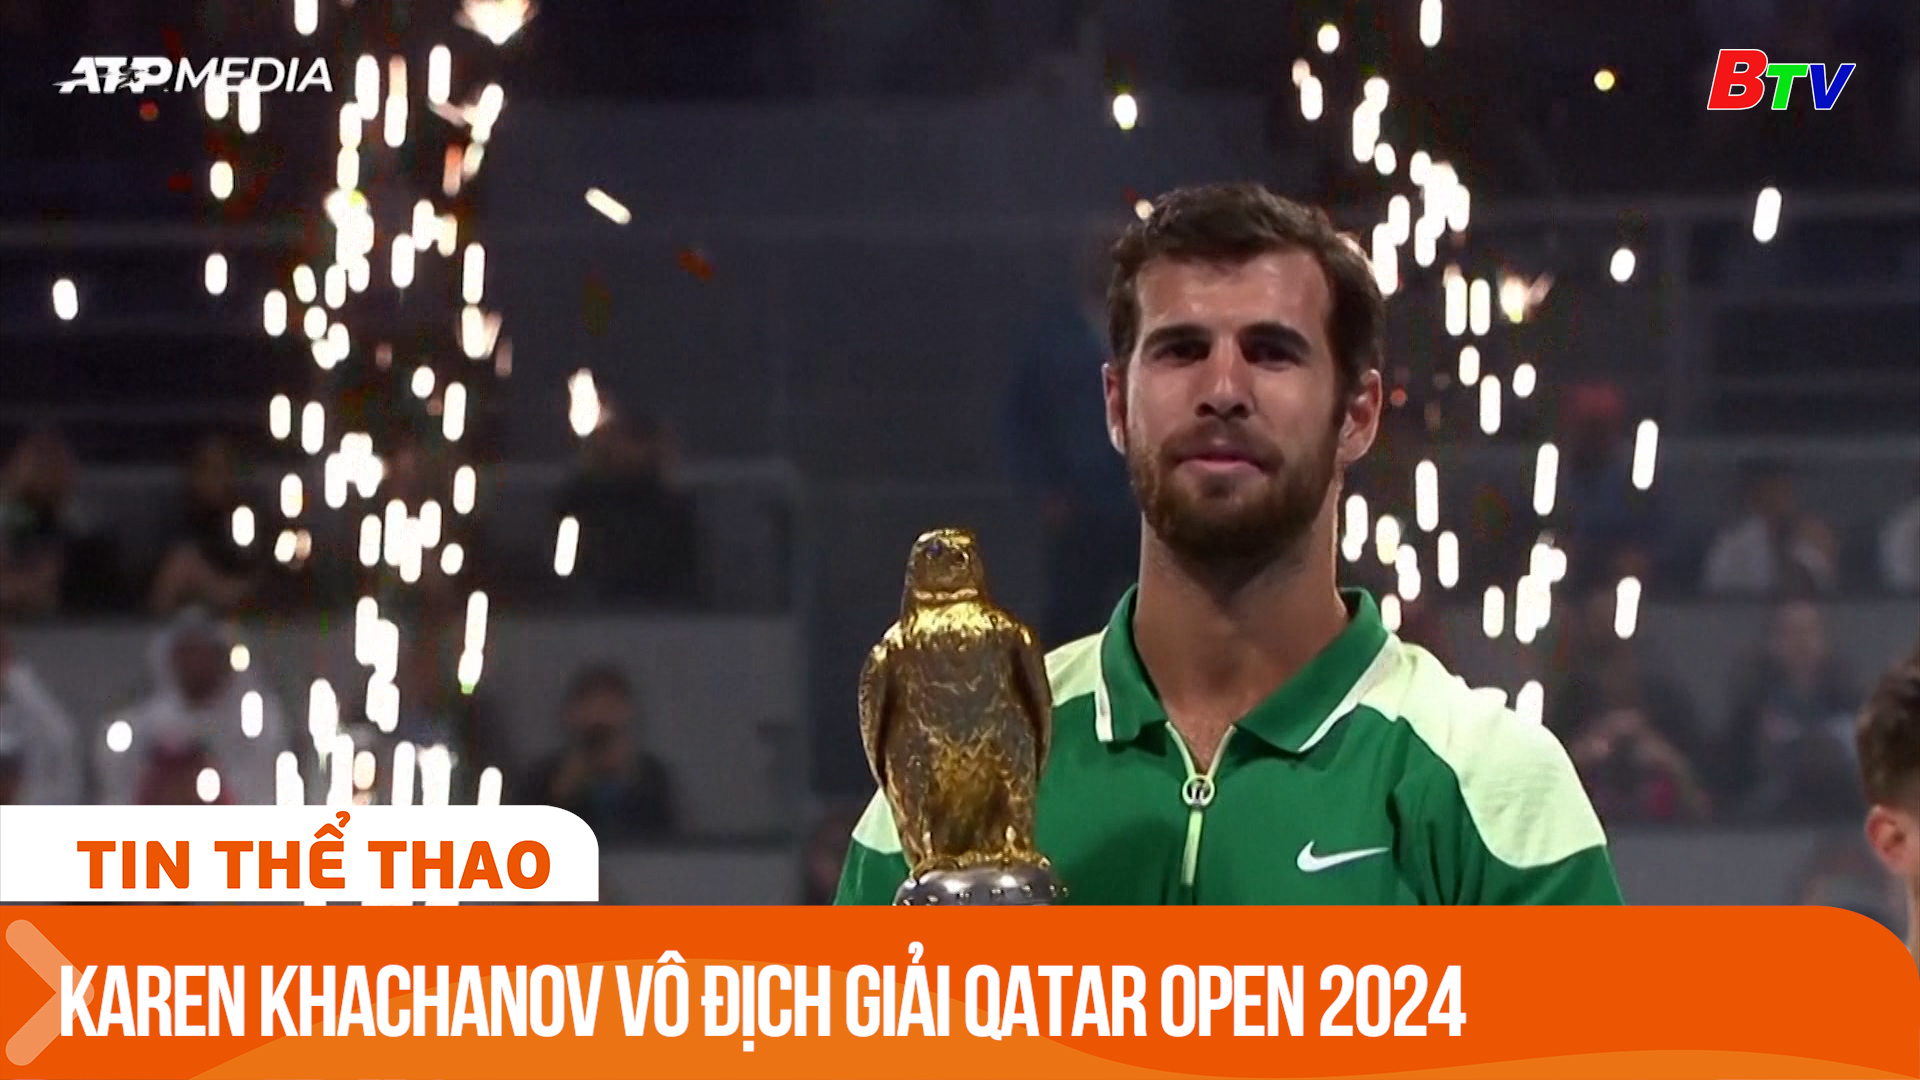 Karen Khachanov vô địch Giải Qatar Open 2024 | Tin Thể thao 24h	